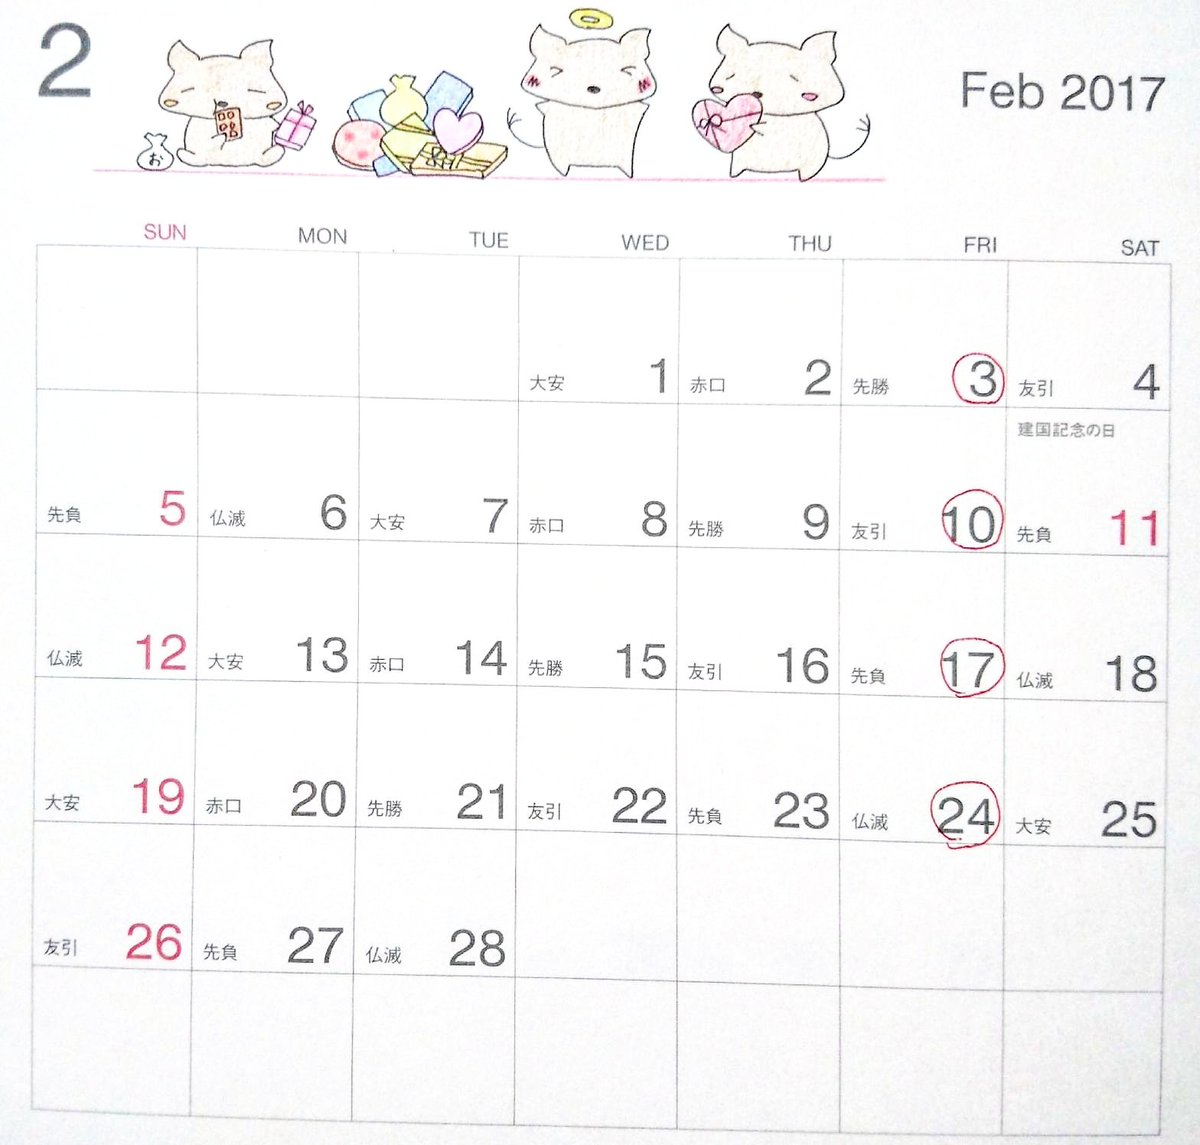 デグーと暮らすライフスタイル Toru 2月の手描きカレンダーです カレンダー カレンダーのイラスト カレンダー17 手描きカレンダー デグー Degu デグーイラスト イラスト